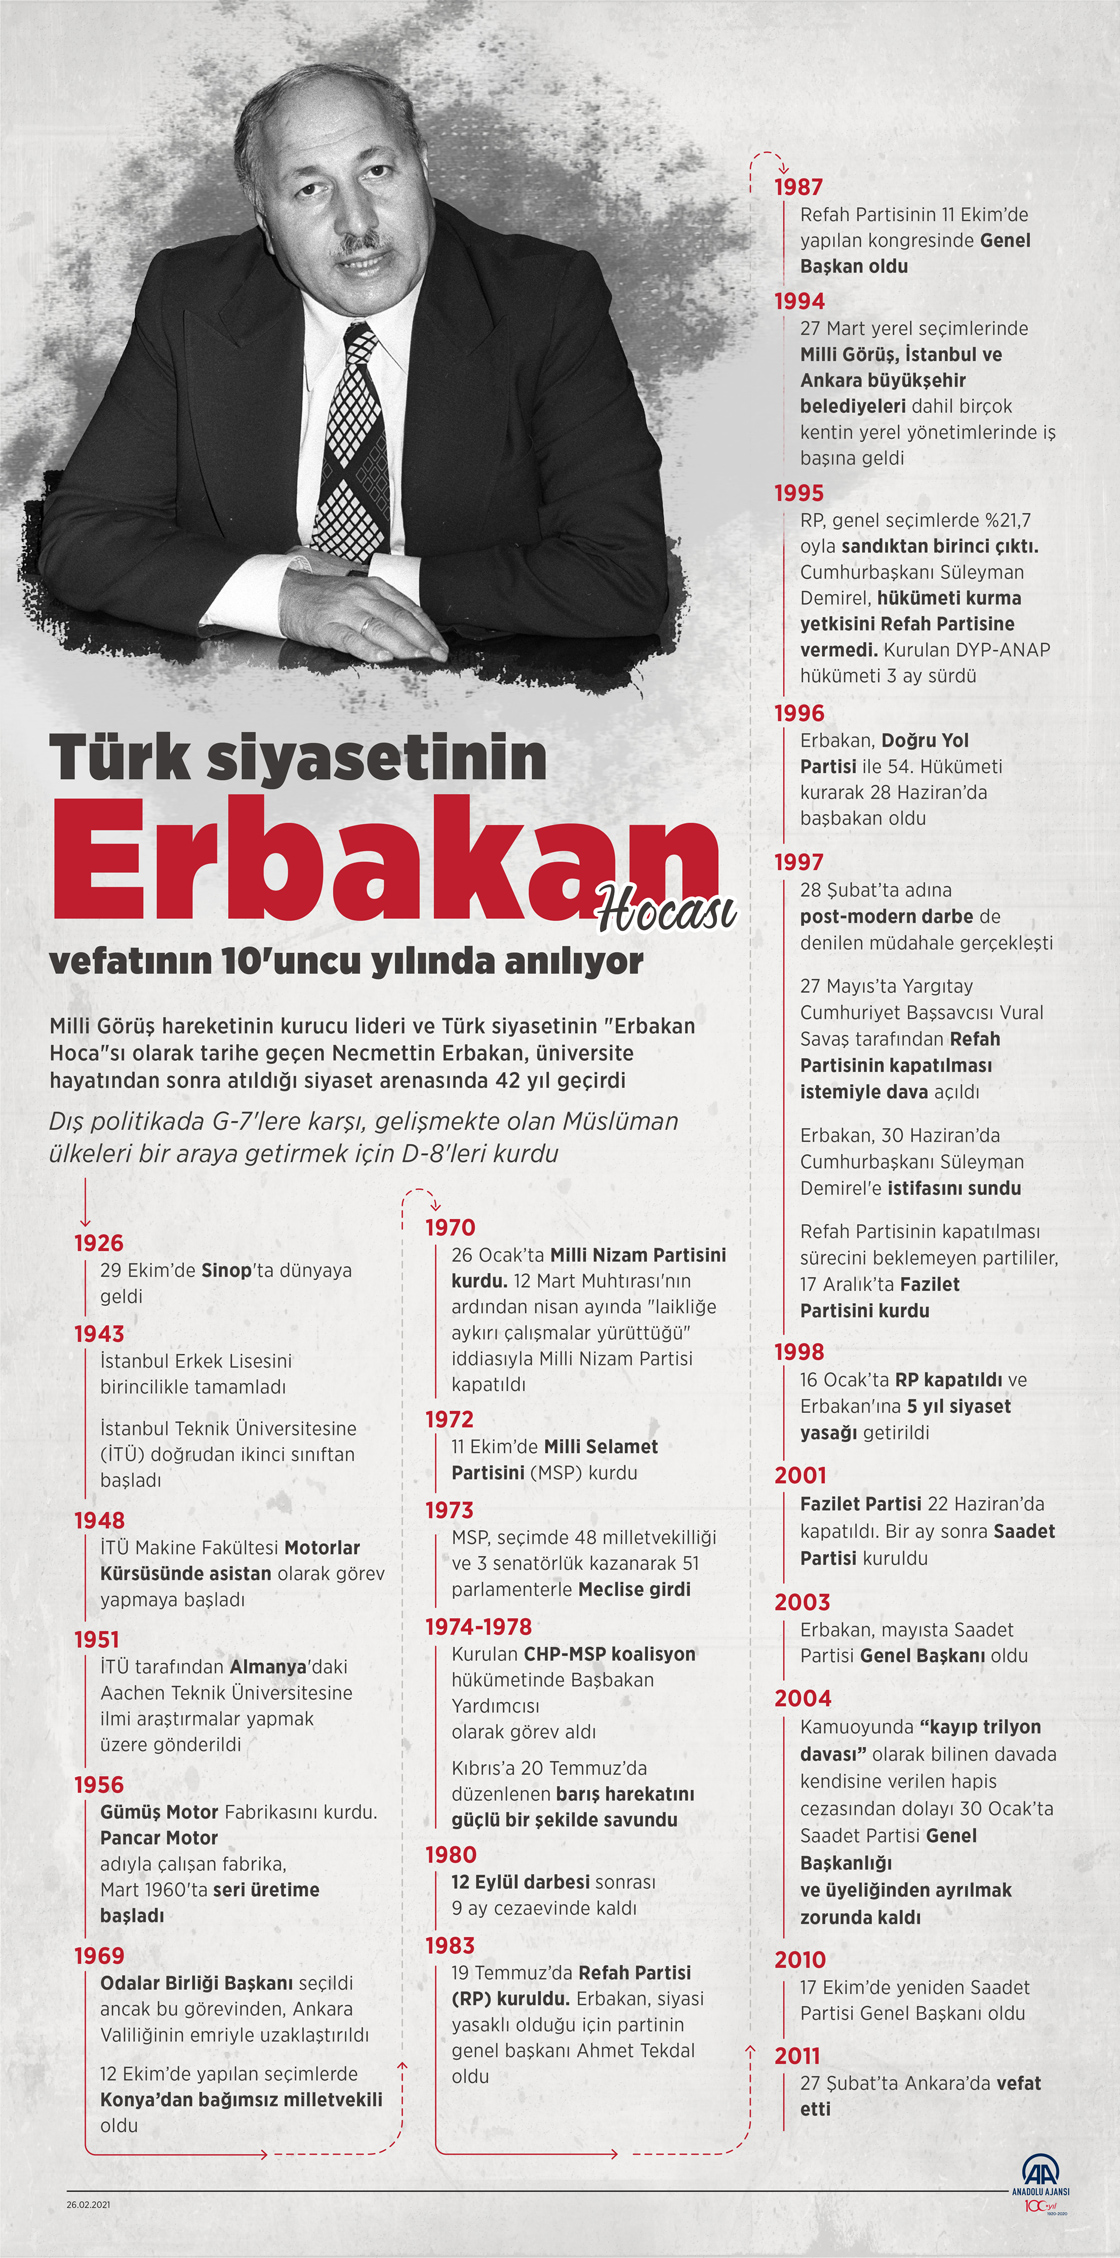 Türk siyasetinin "Erbakan Hoca"sı, vefatının 10'uncu yılında anılıyor